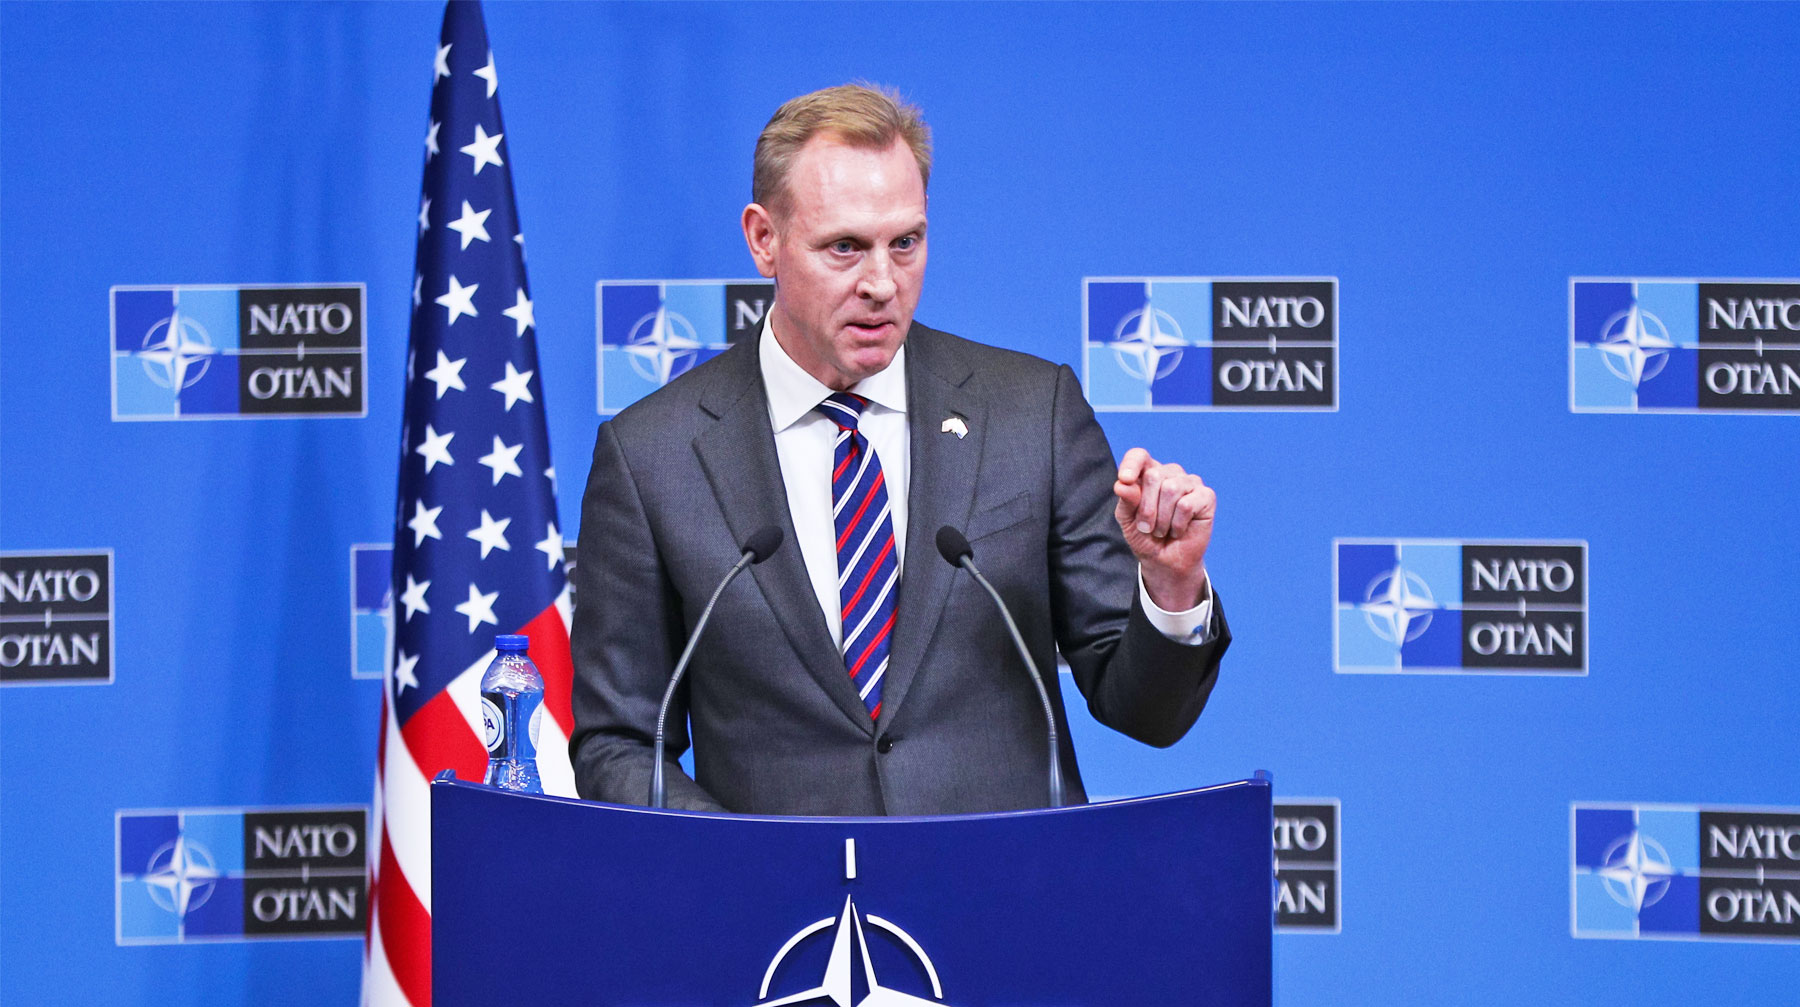 Патрик Шанахан убежден, что все страны, входящие в НАТО, должны сохранить альянс и нарастить военные бюджеты Временно исполняющий обязанности главы Минобороны США Патрик Шанахан